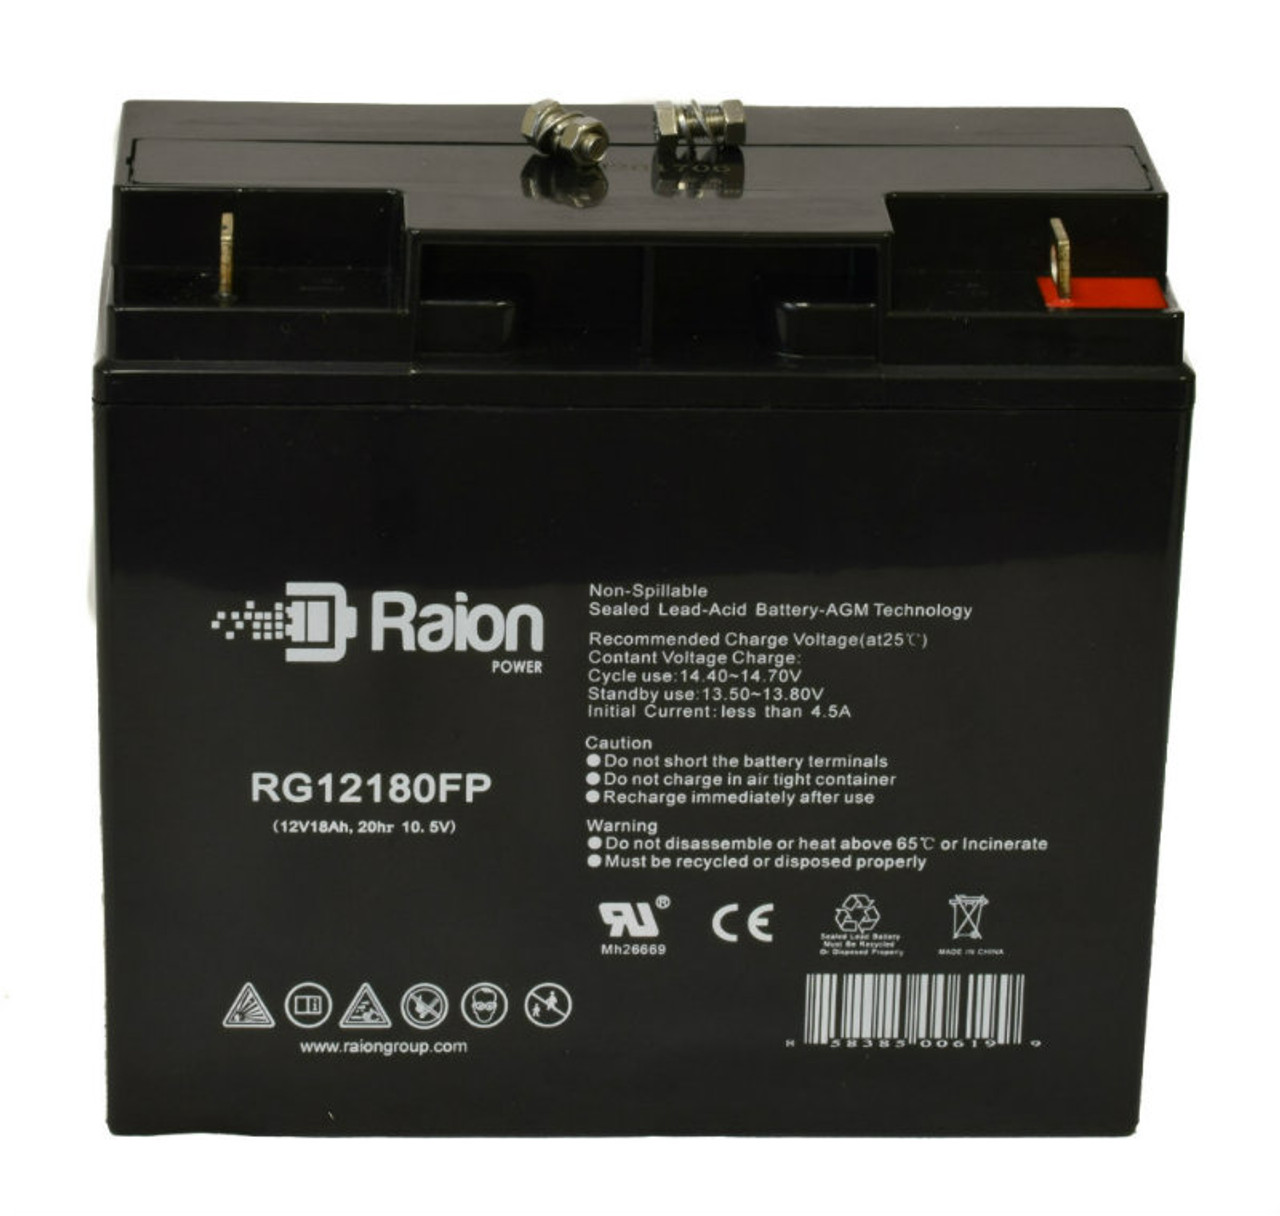 Raion Power RG12180FP 12V 18Ah Lead Acid Battery for Excel XL12180